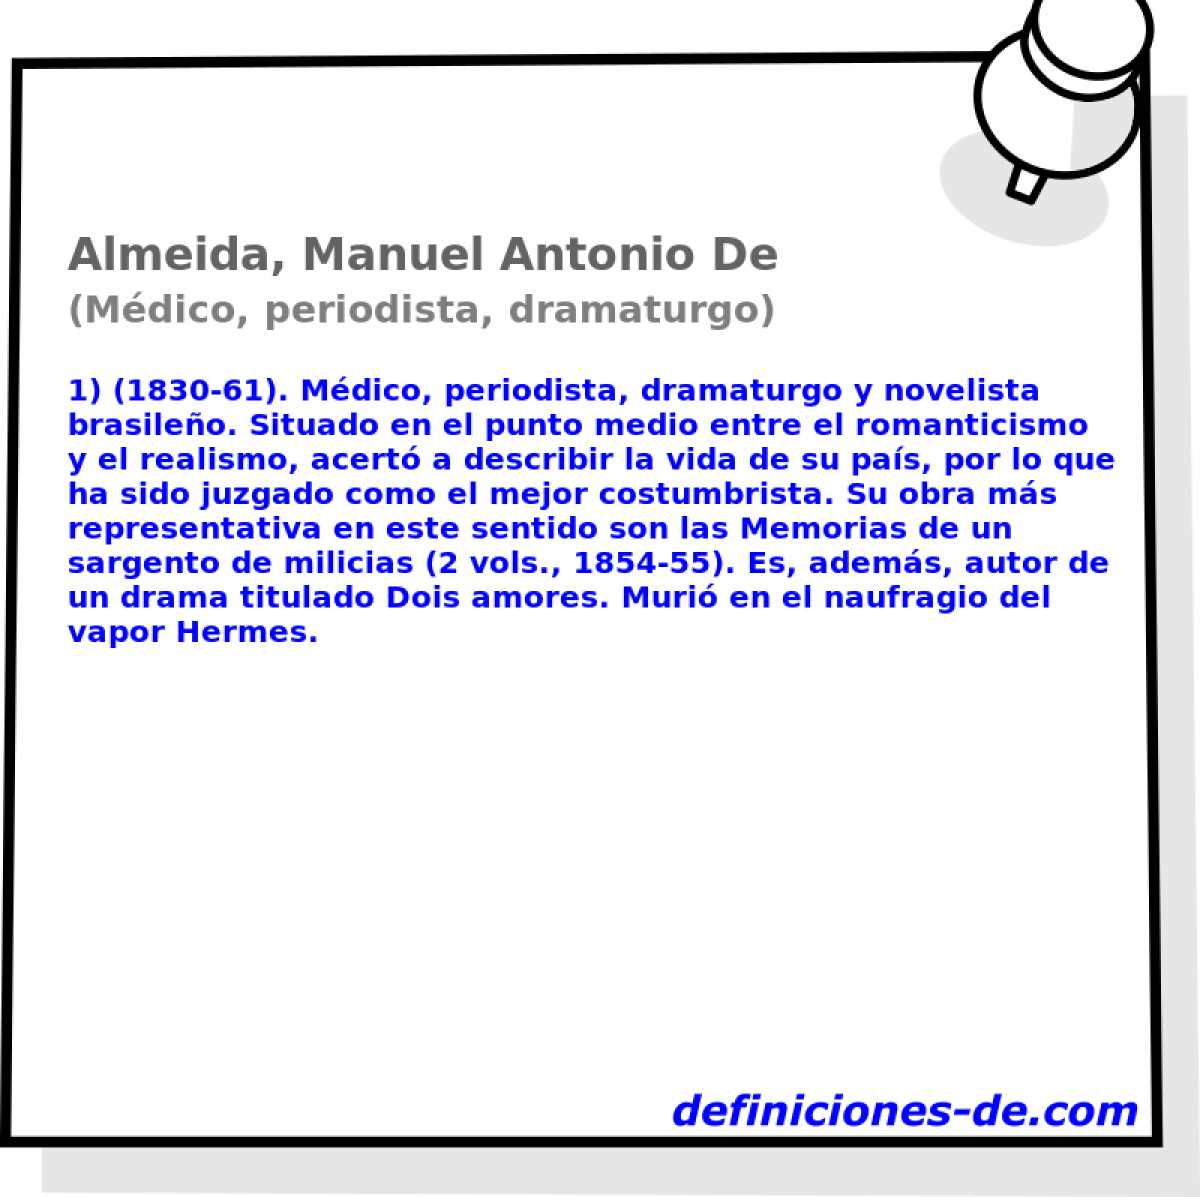 Almeida, Manuel Antonio De (Mdico, periodista, dramaturgo)